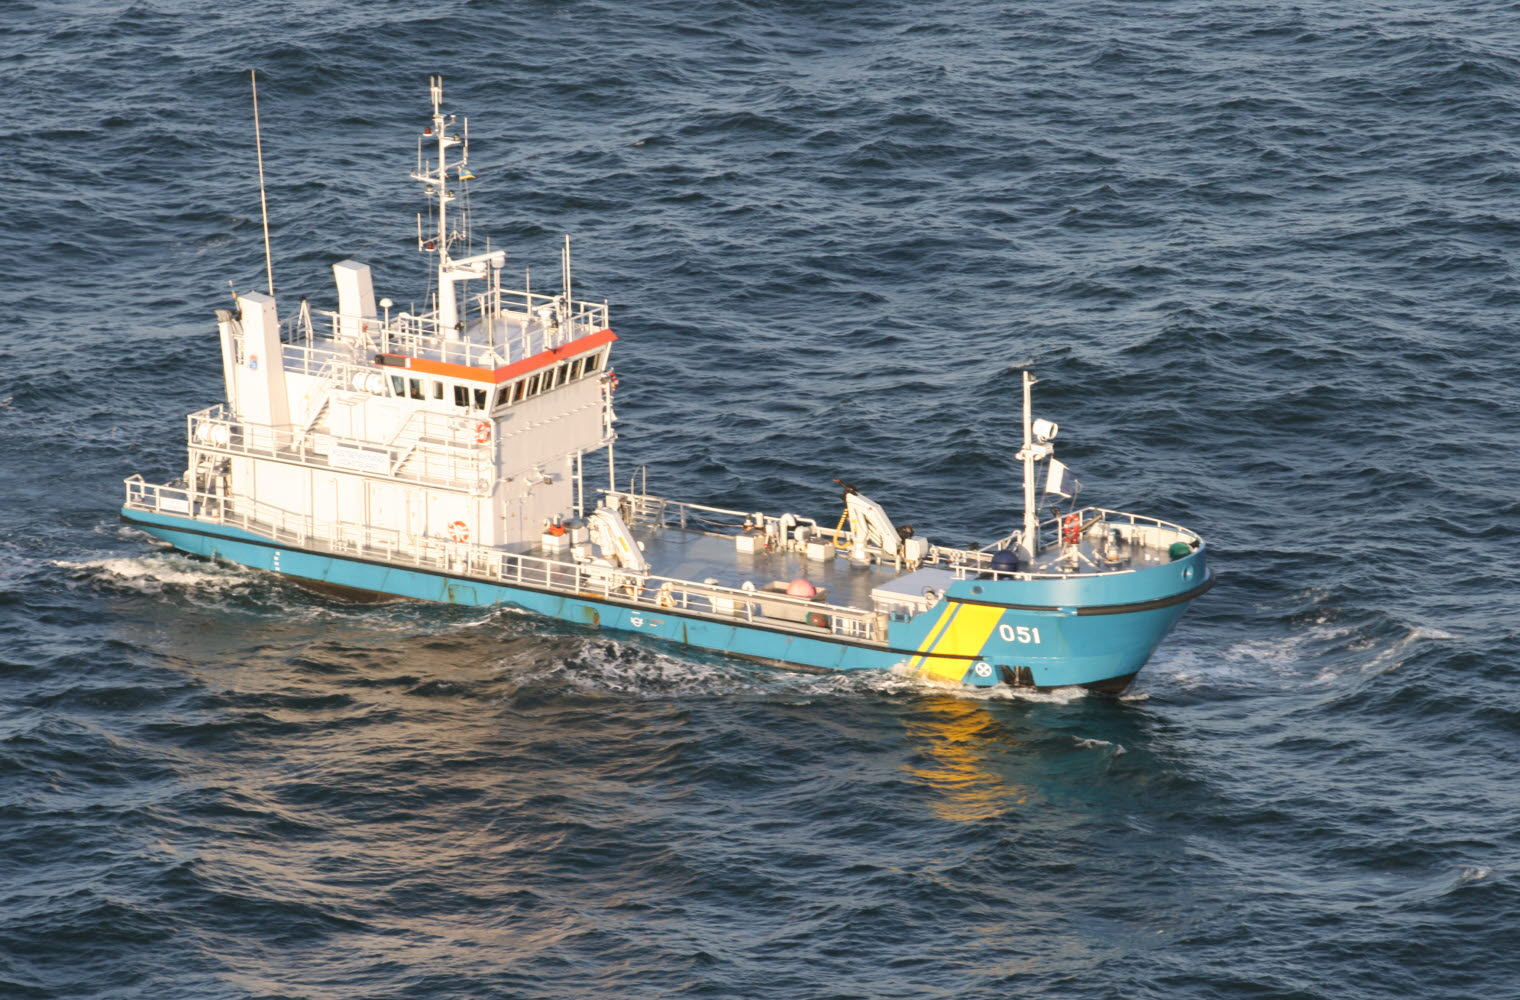 Miljöskyddsfartyg KBV 051 sedd uppifrån